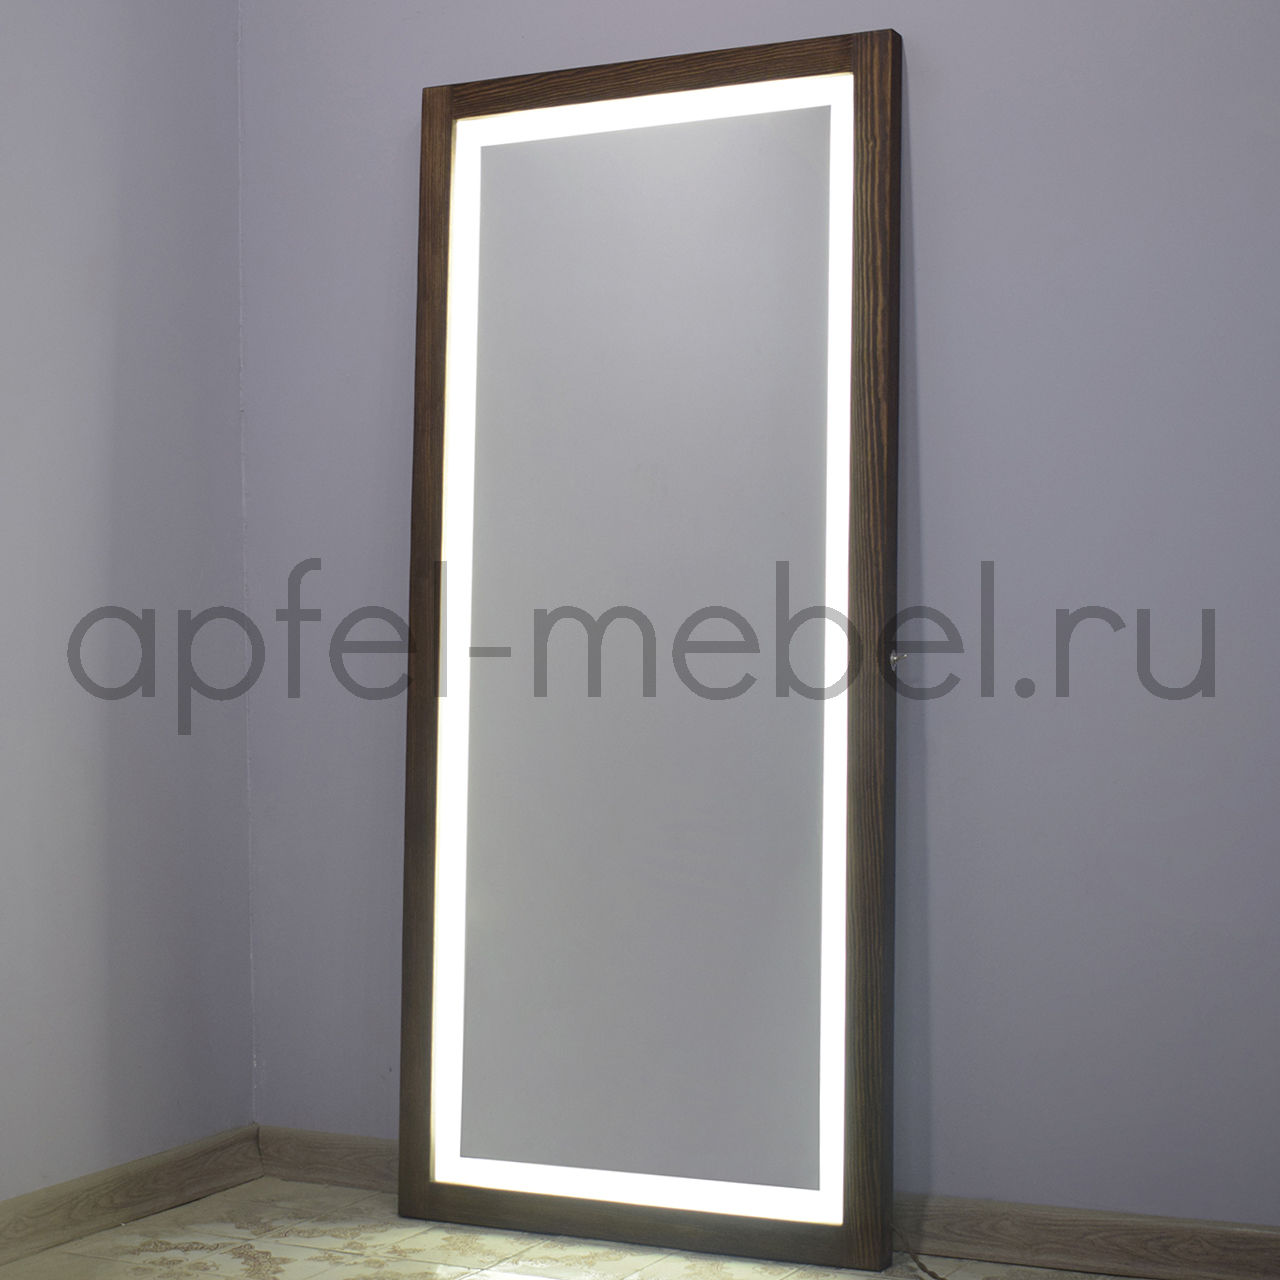 Гримерное зеркало с подсветкой Джоли, 60х80 см (мех. выключатель, для 12 ламп, без комплекта ламп)